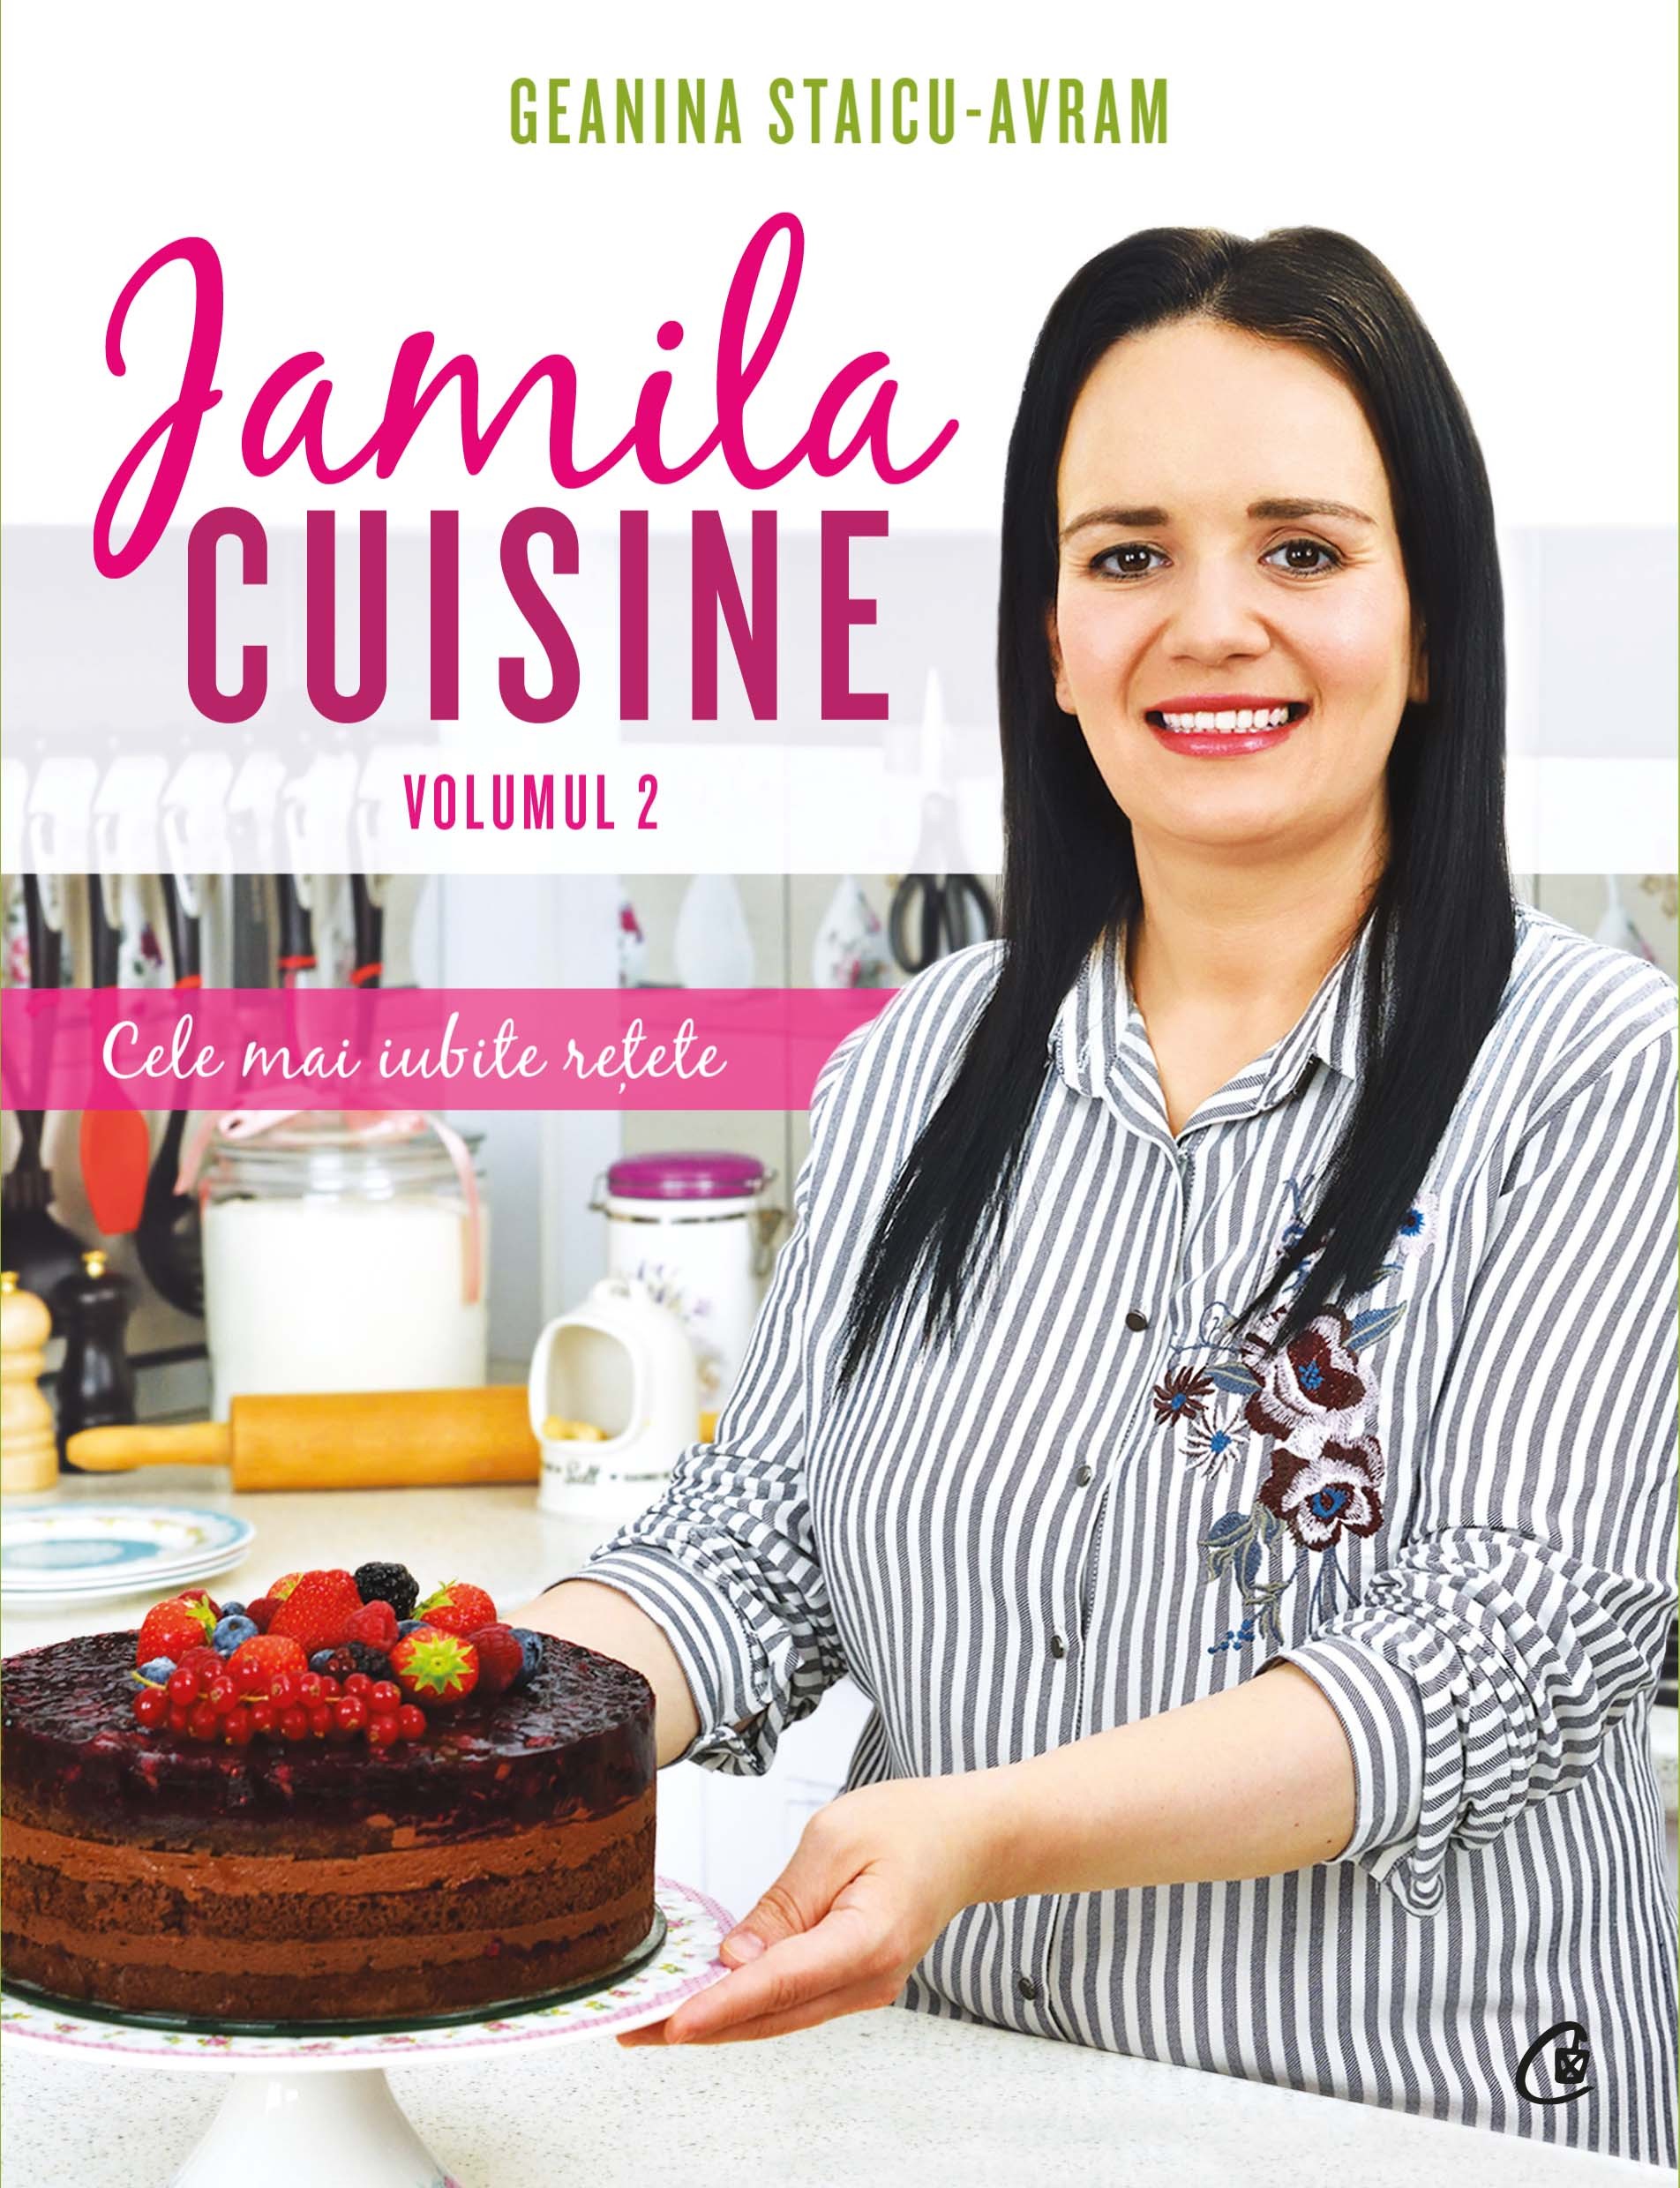 Jamila Cuisine vol. II | Geanina Staicu-Avram Curtea Veche imagine 2021